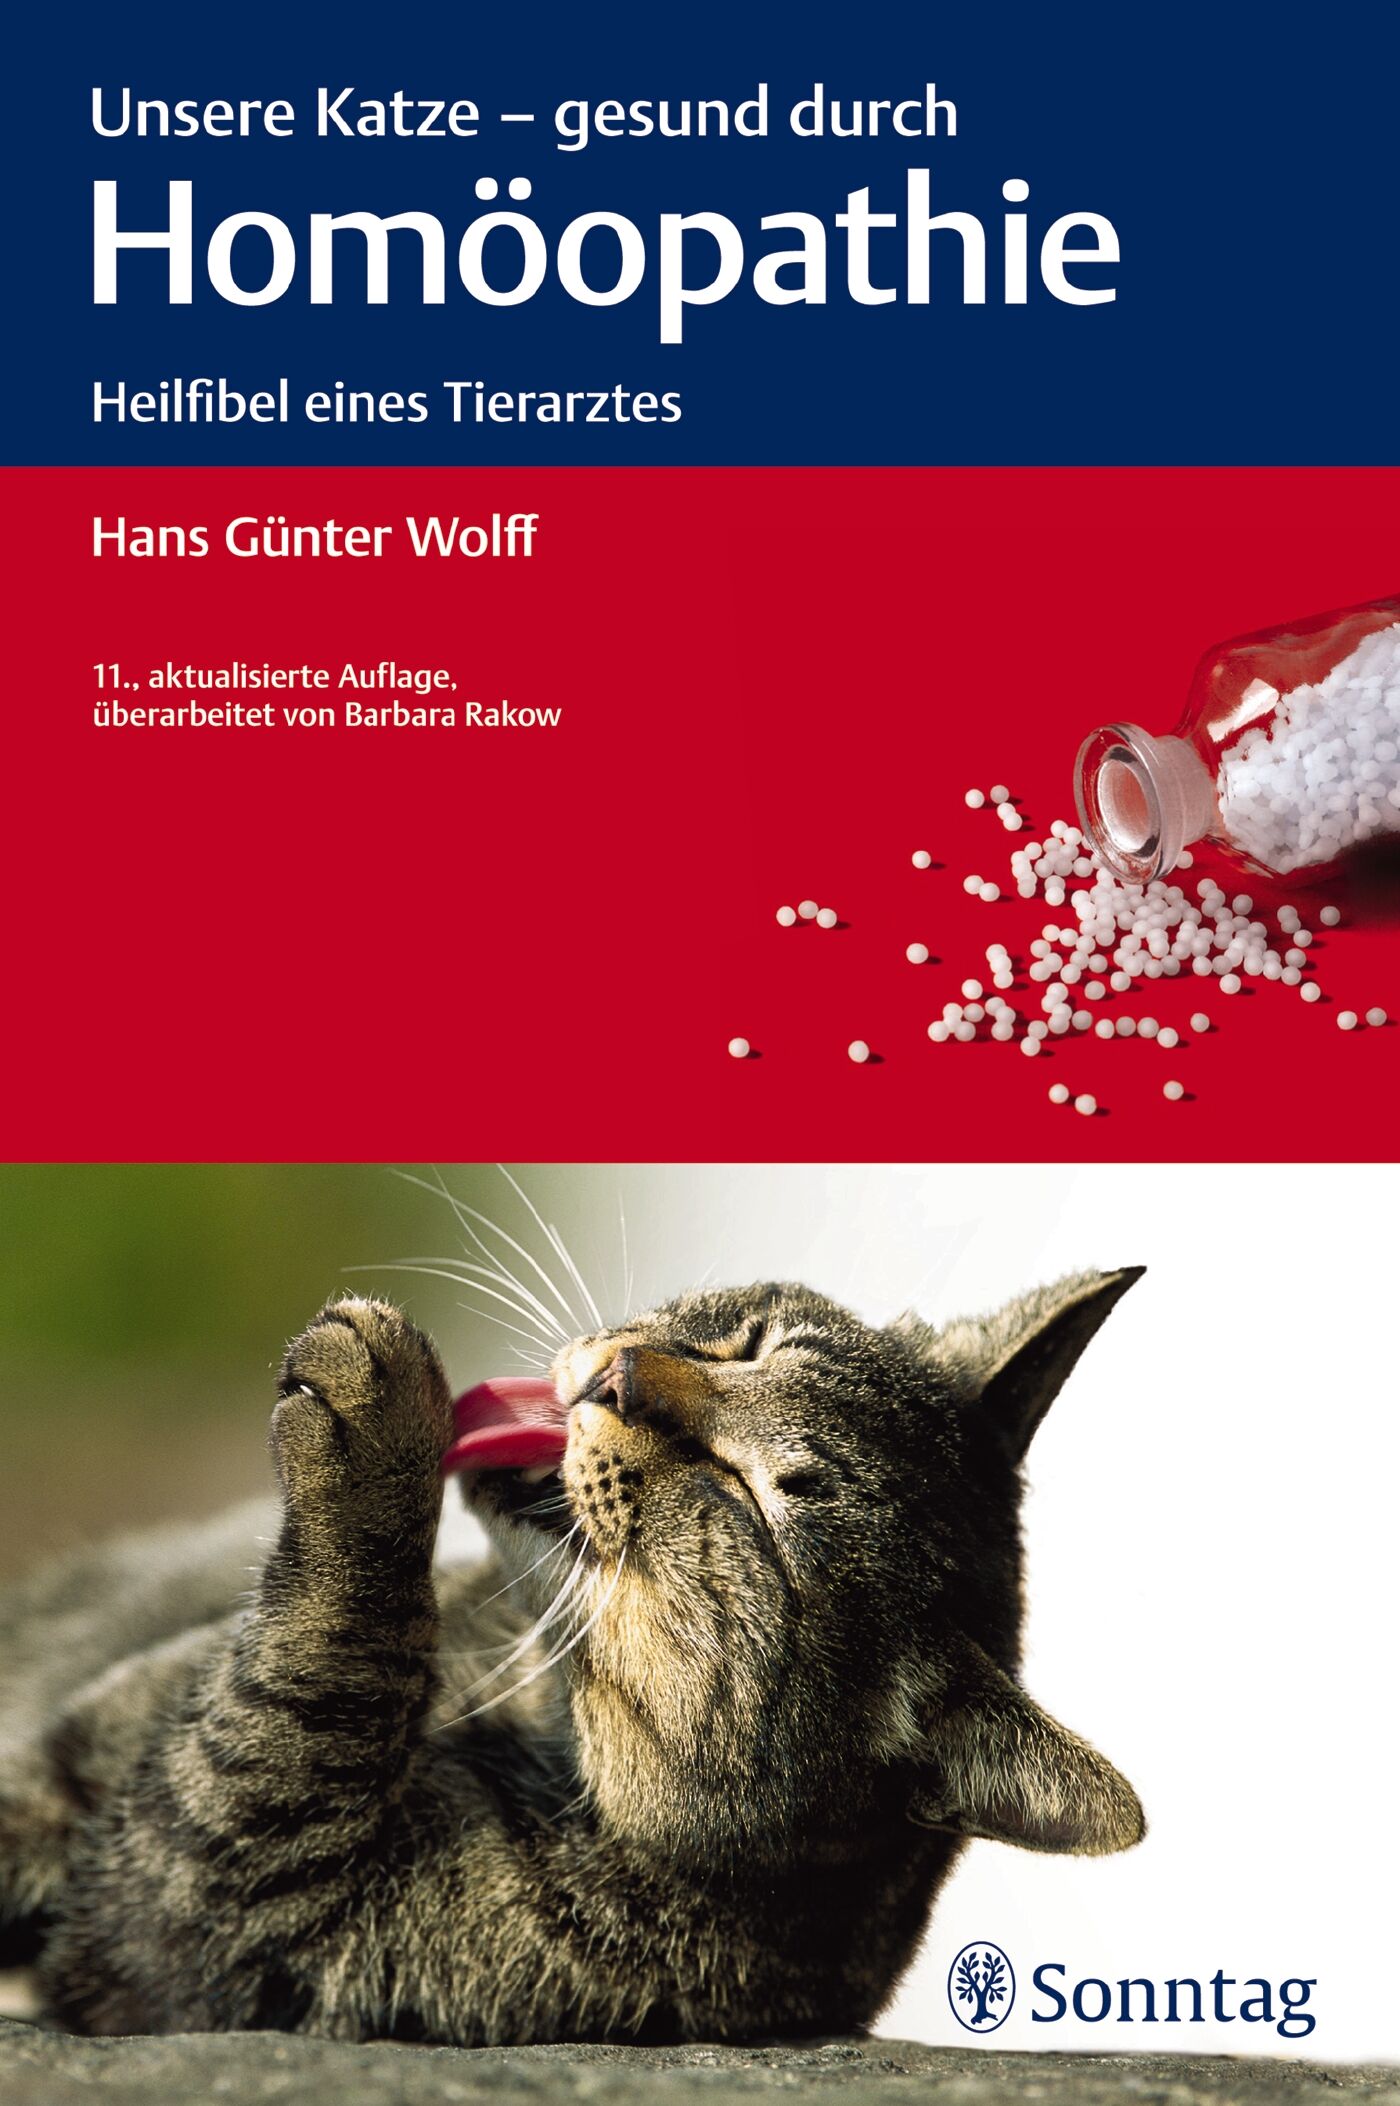 Unsere Katze - gesund durch Homöopathie, 9783830493600